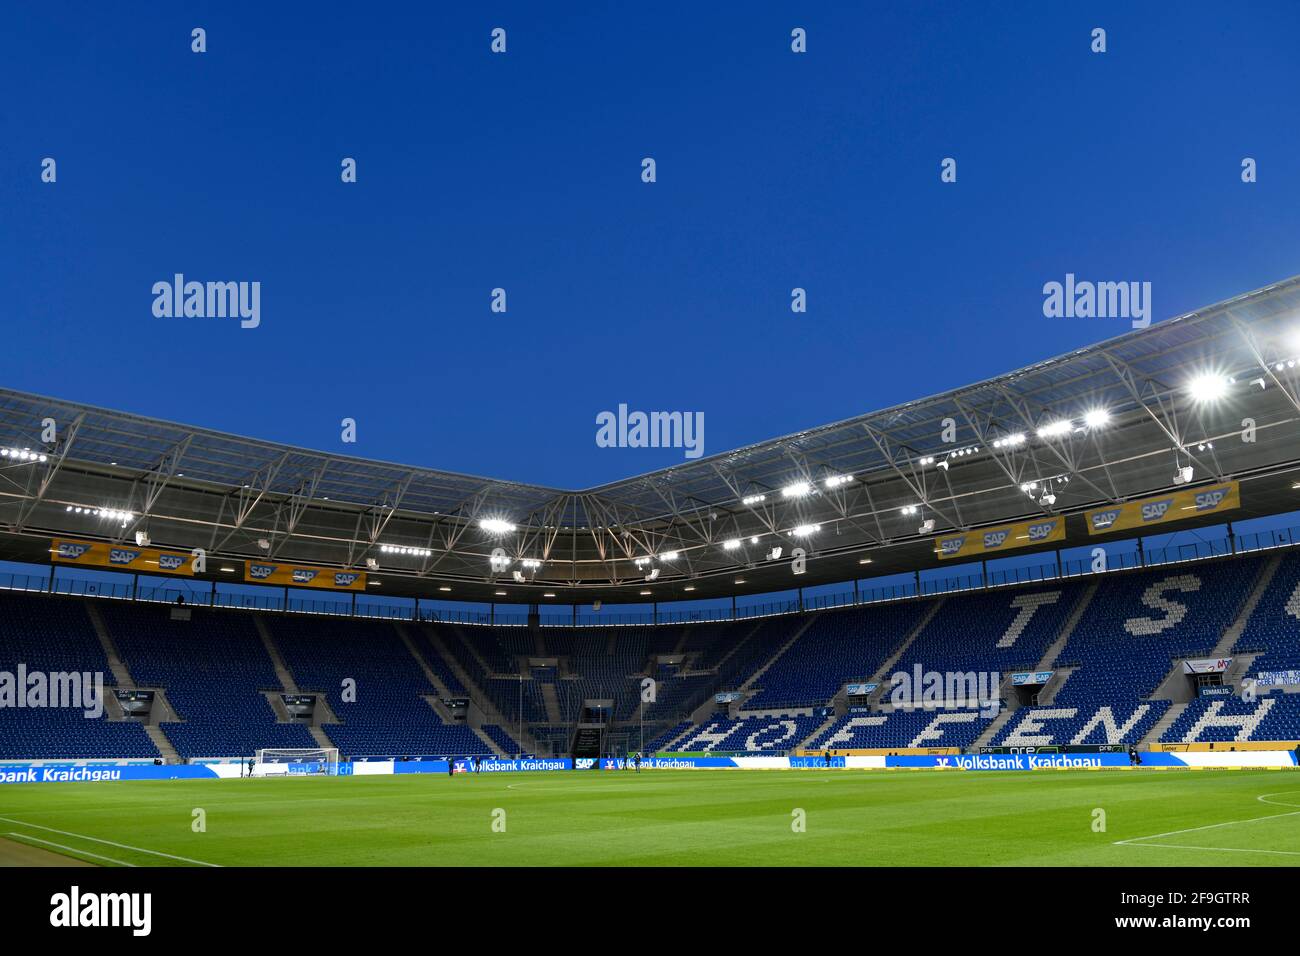 Vue d'ensemble de l'intérieur de la PreZero Arena, heure bleue, Sinsheim, Bade-Wurtemberg, Allemagne Banque D'Images